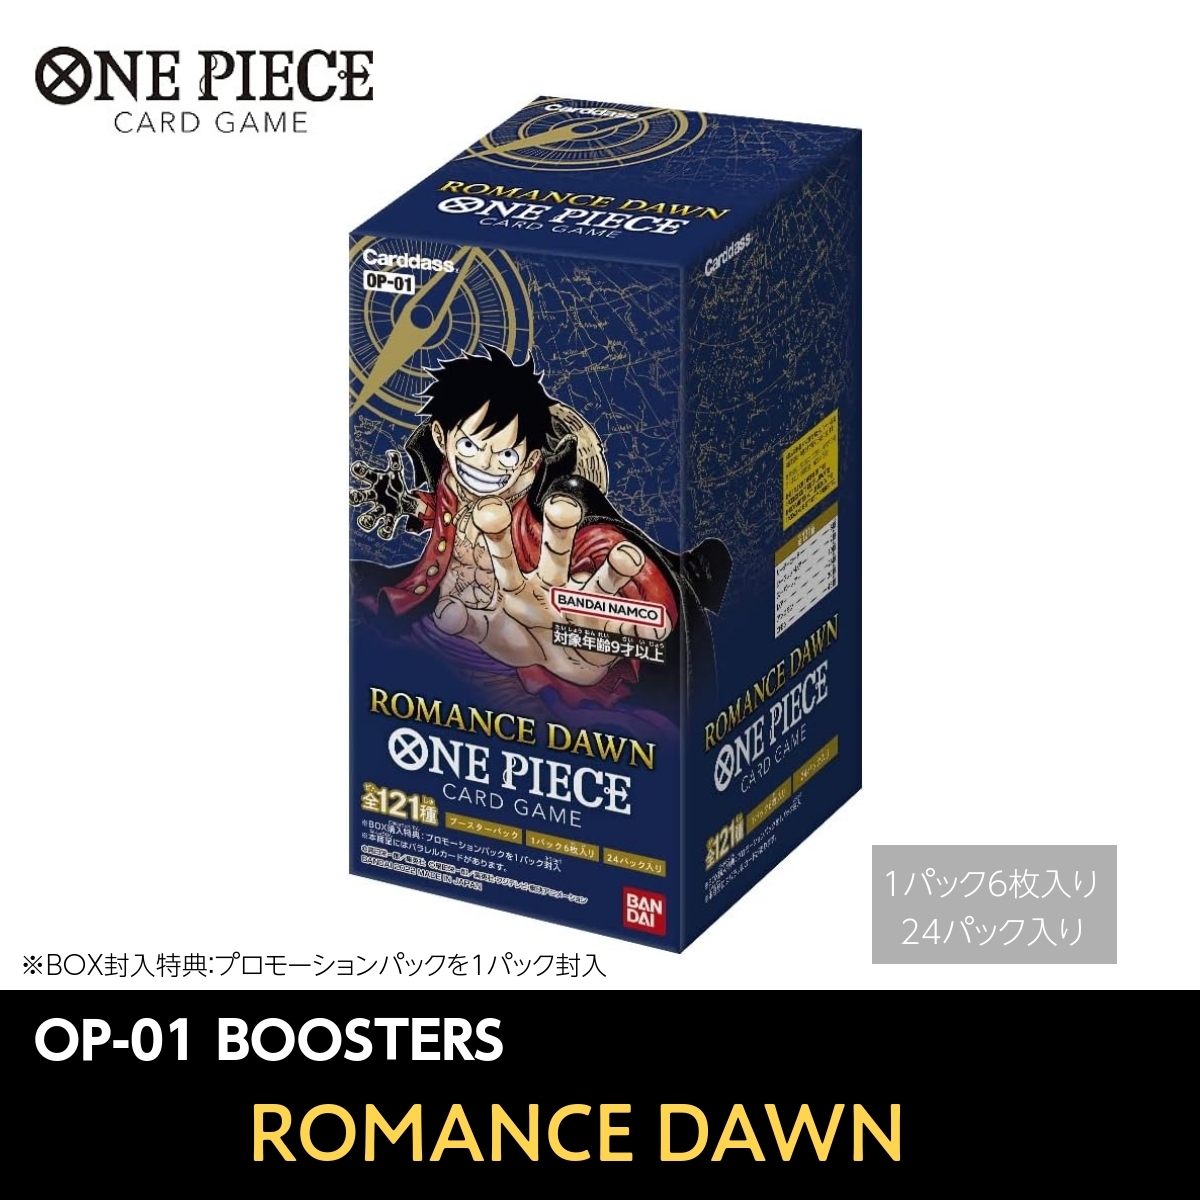 ONE PIECE CARD GAME ROMANCE DAWN ブースターパック OP-01 BOX ワンピース トレーディングカードゲーム トレカ アニメ 漫画 キャラクター